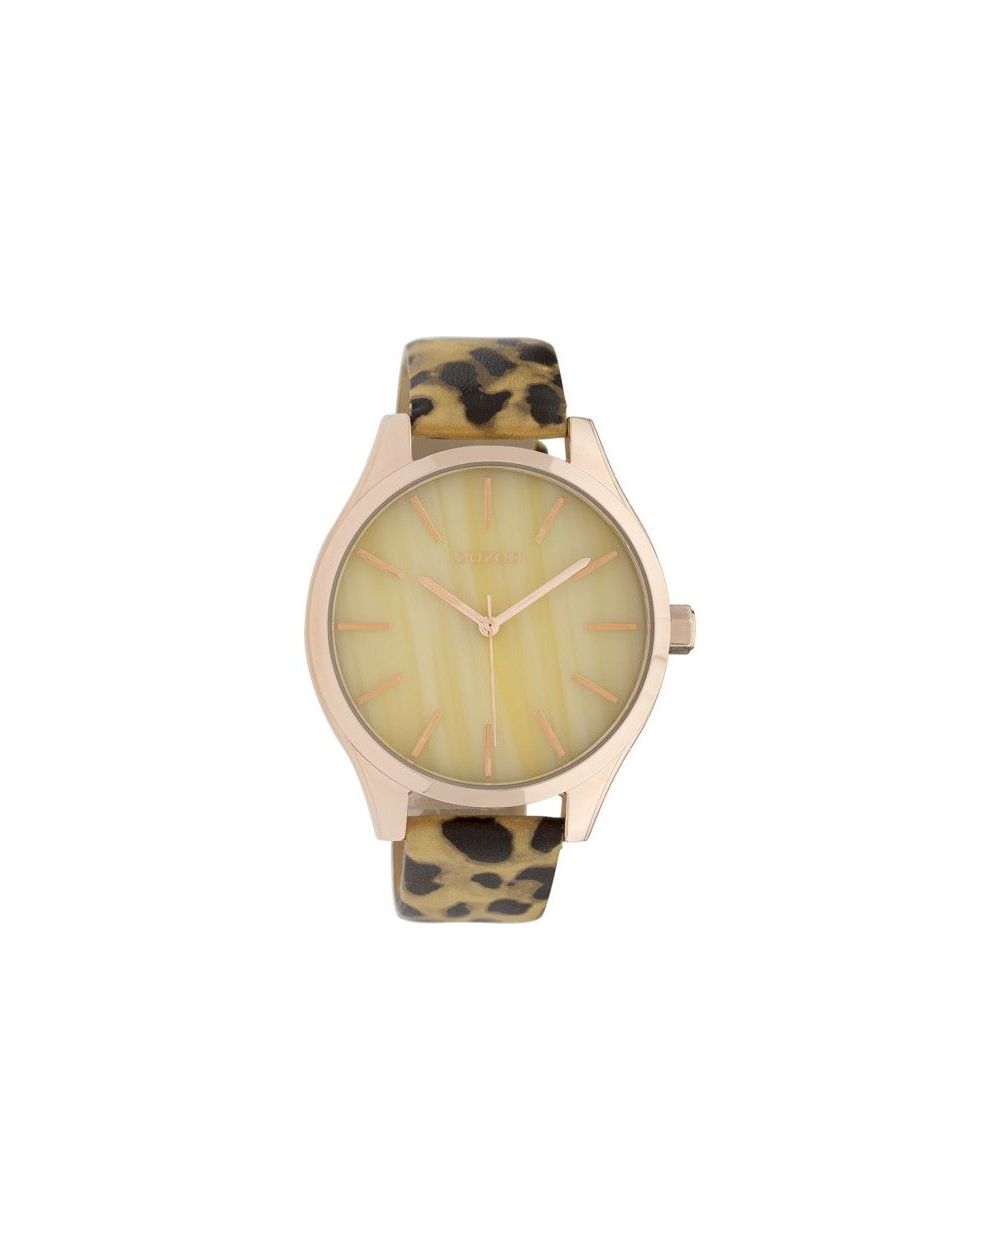 Montre Oozoo Timepieces C9792 gold/black leopard - Marque de montre Oozoo